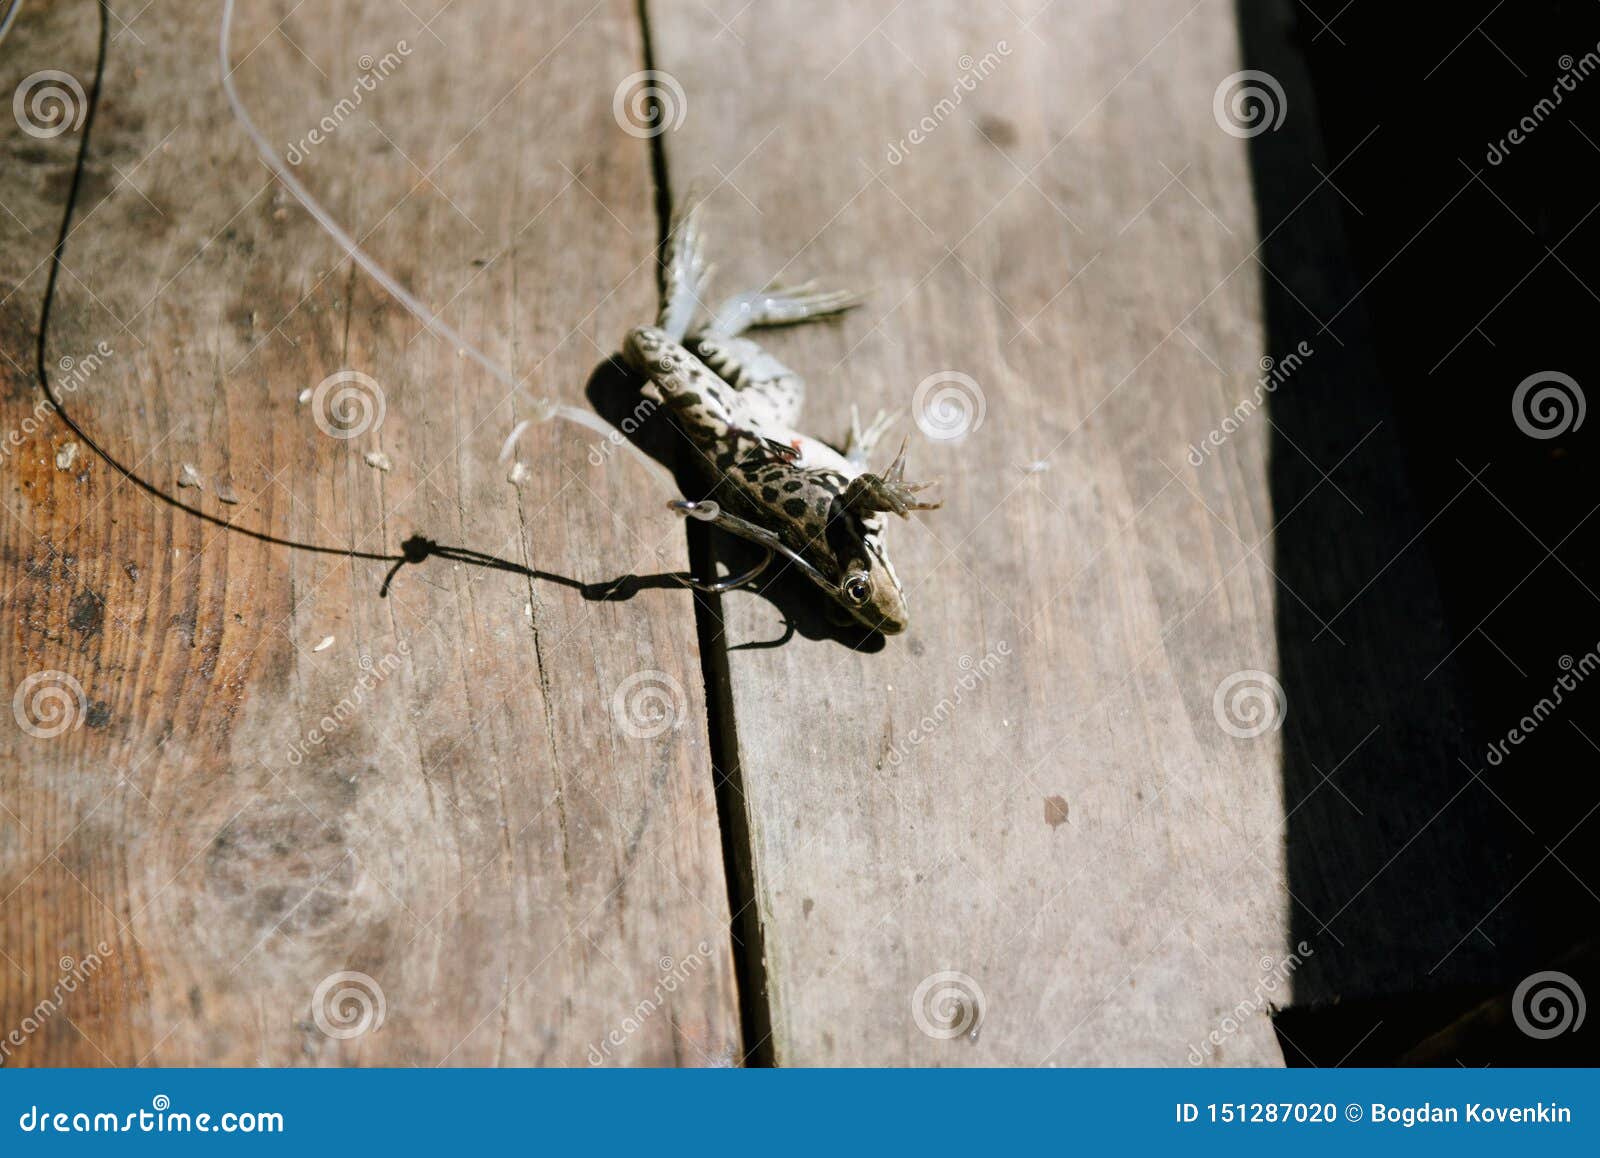 Live Frog, Impaled on a Large Fishing Hook Stock Photo - Image of fishing,  shiny: 151287020